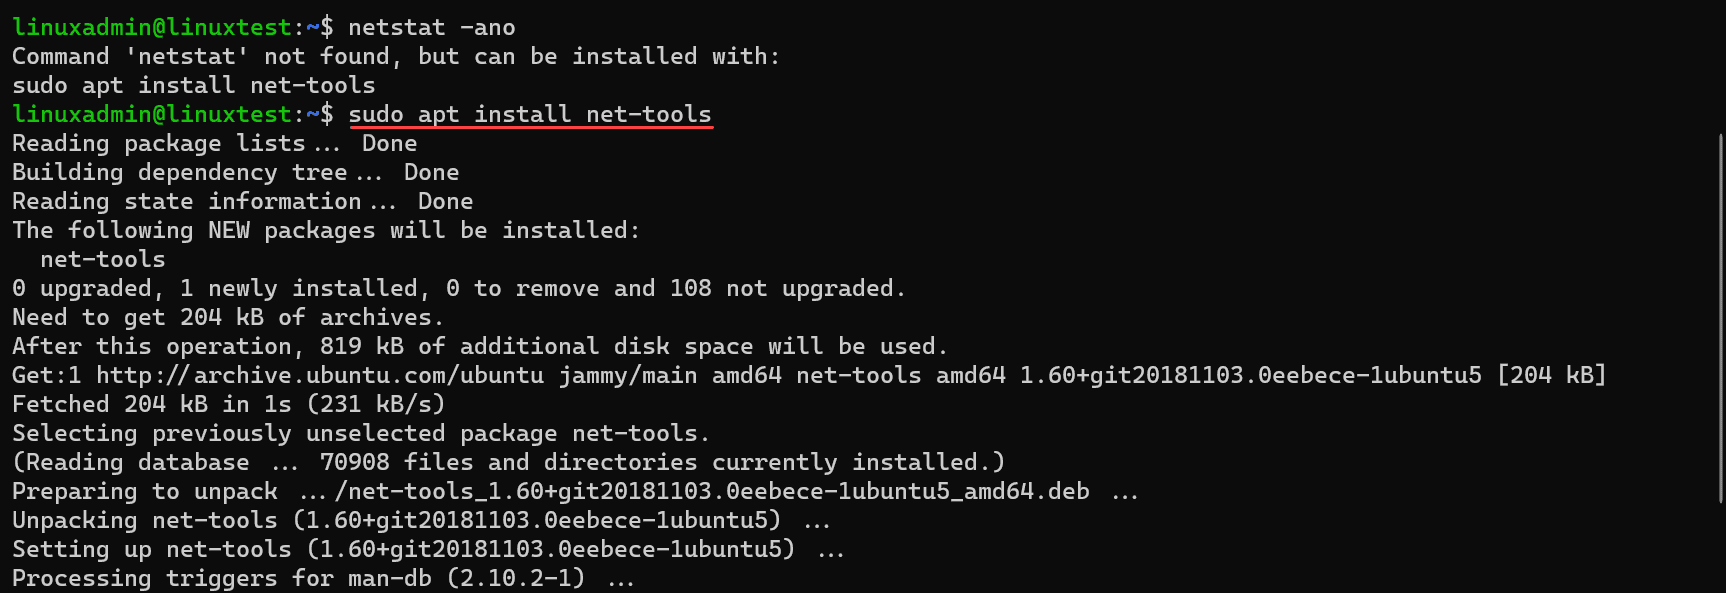 Installing netstat in Linux